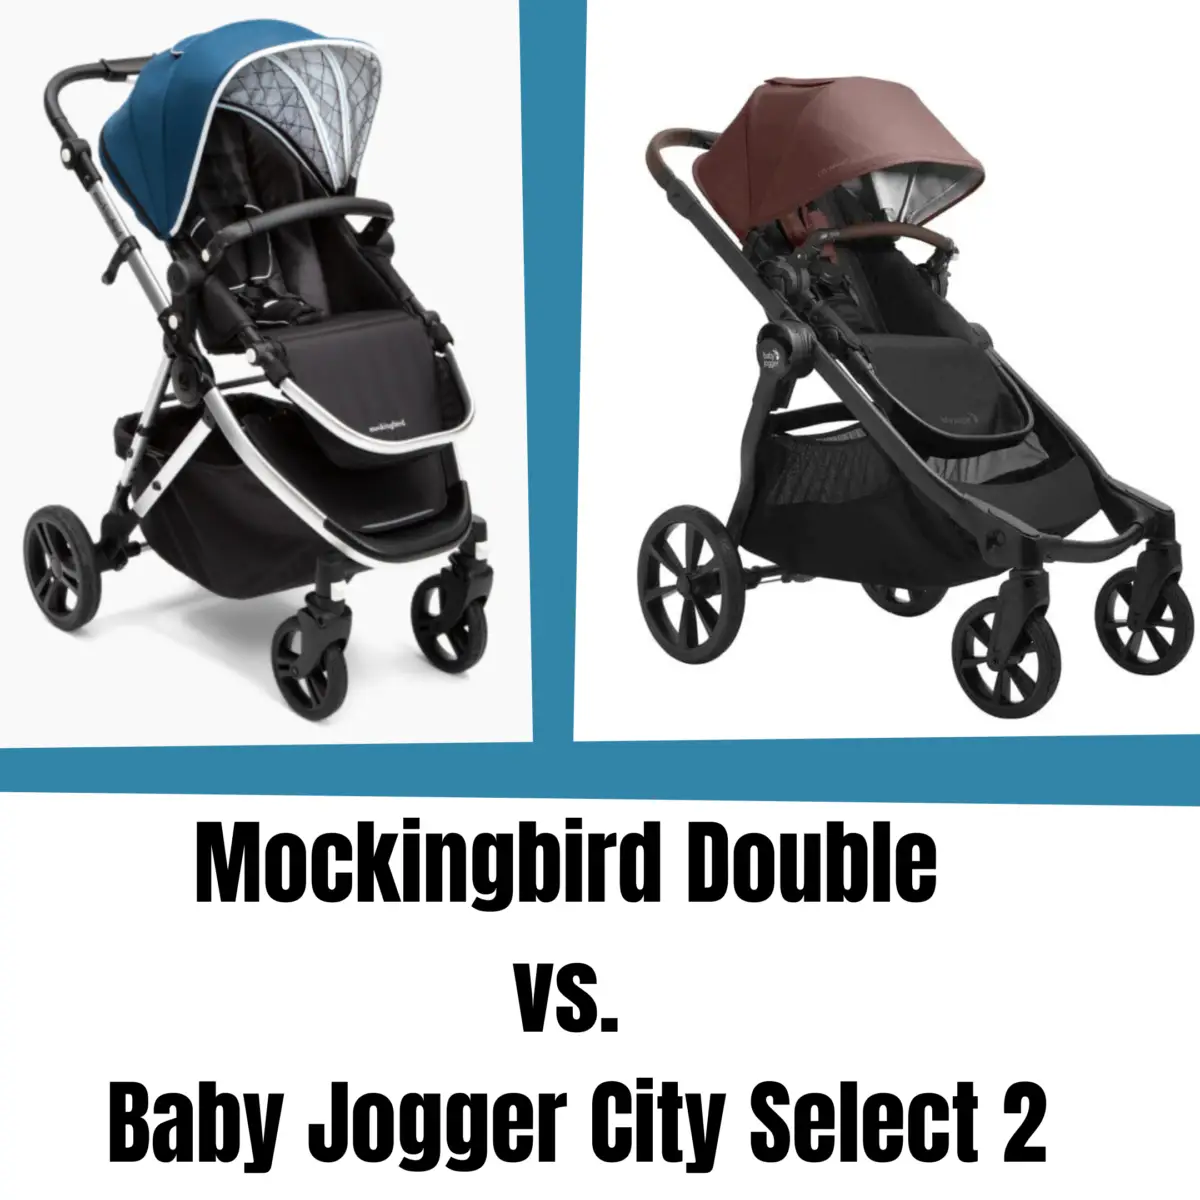 Mockingbird Double vs Baby Jogger City Select